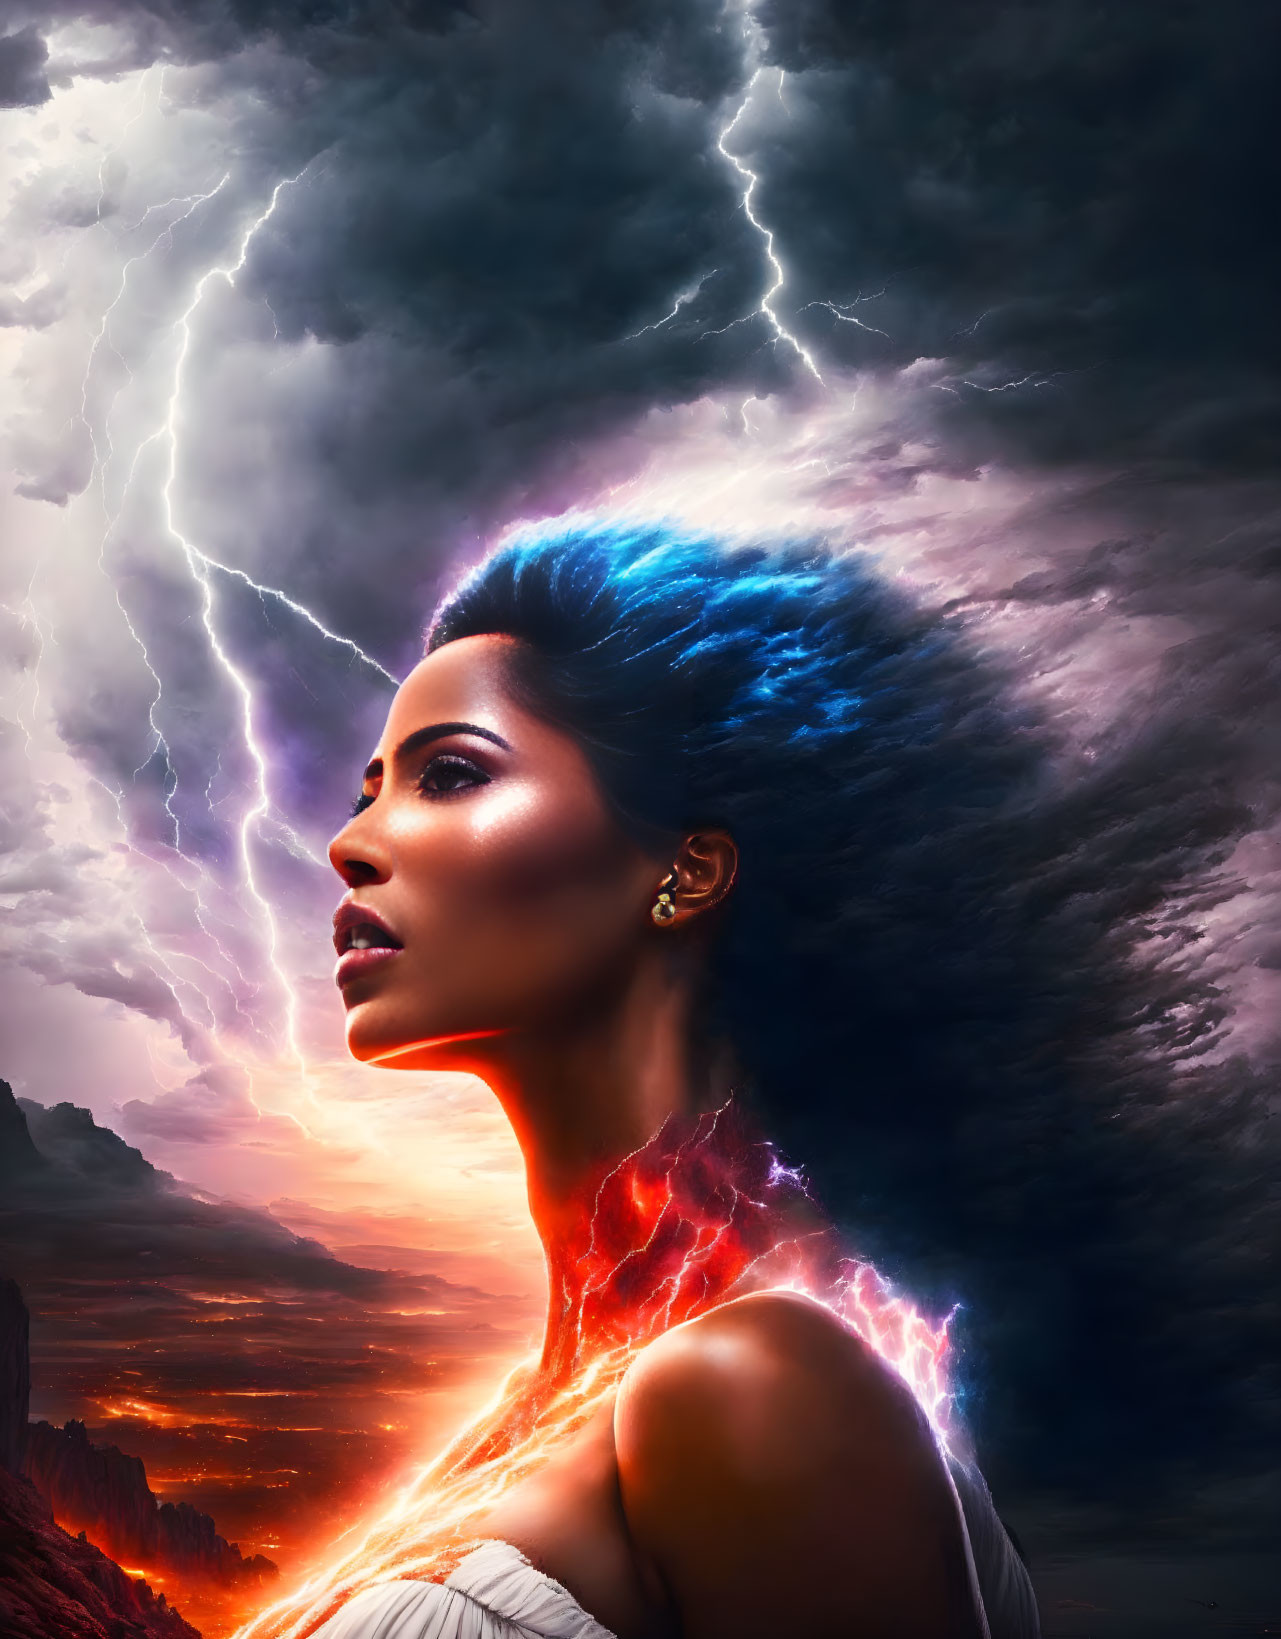 Goddess of Thunder and Lightning